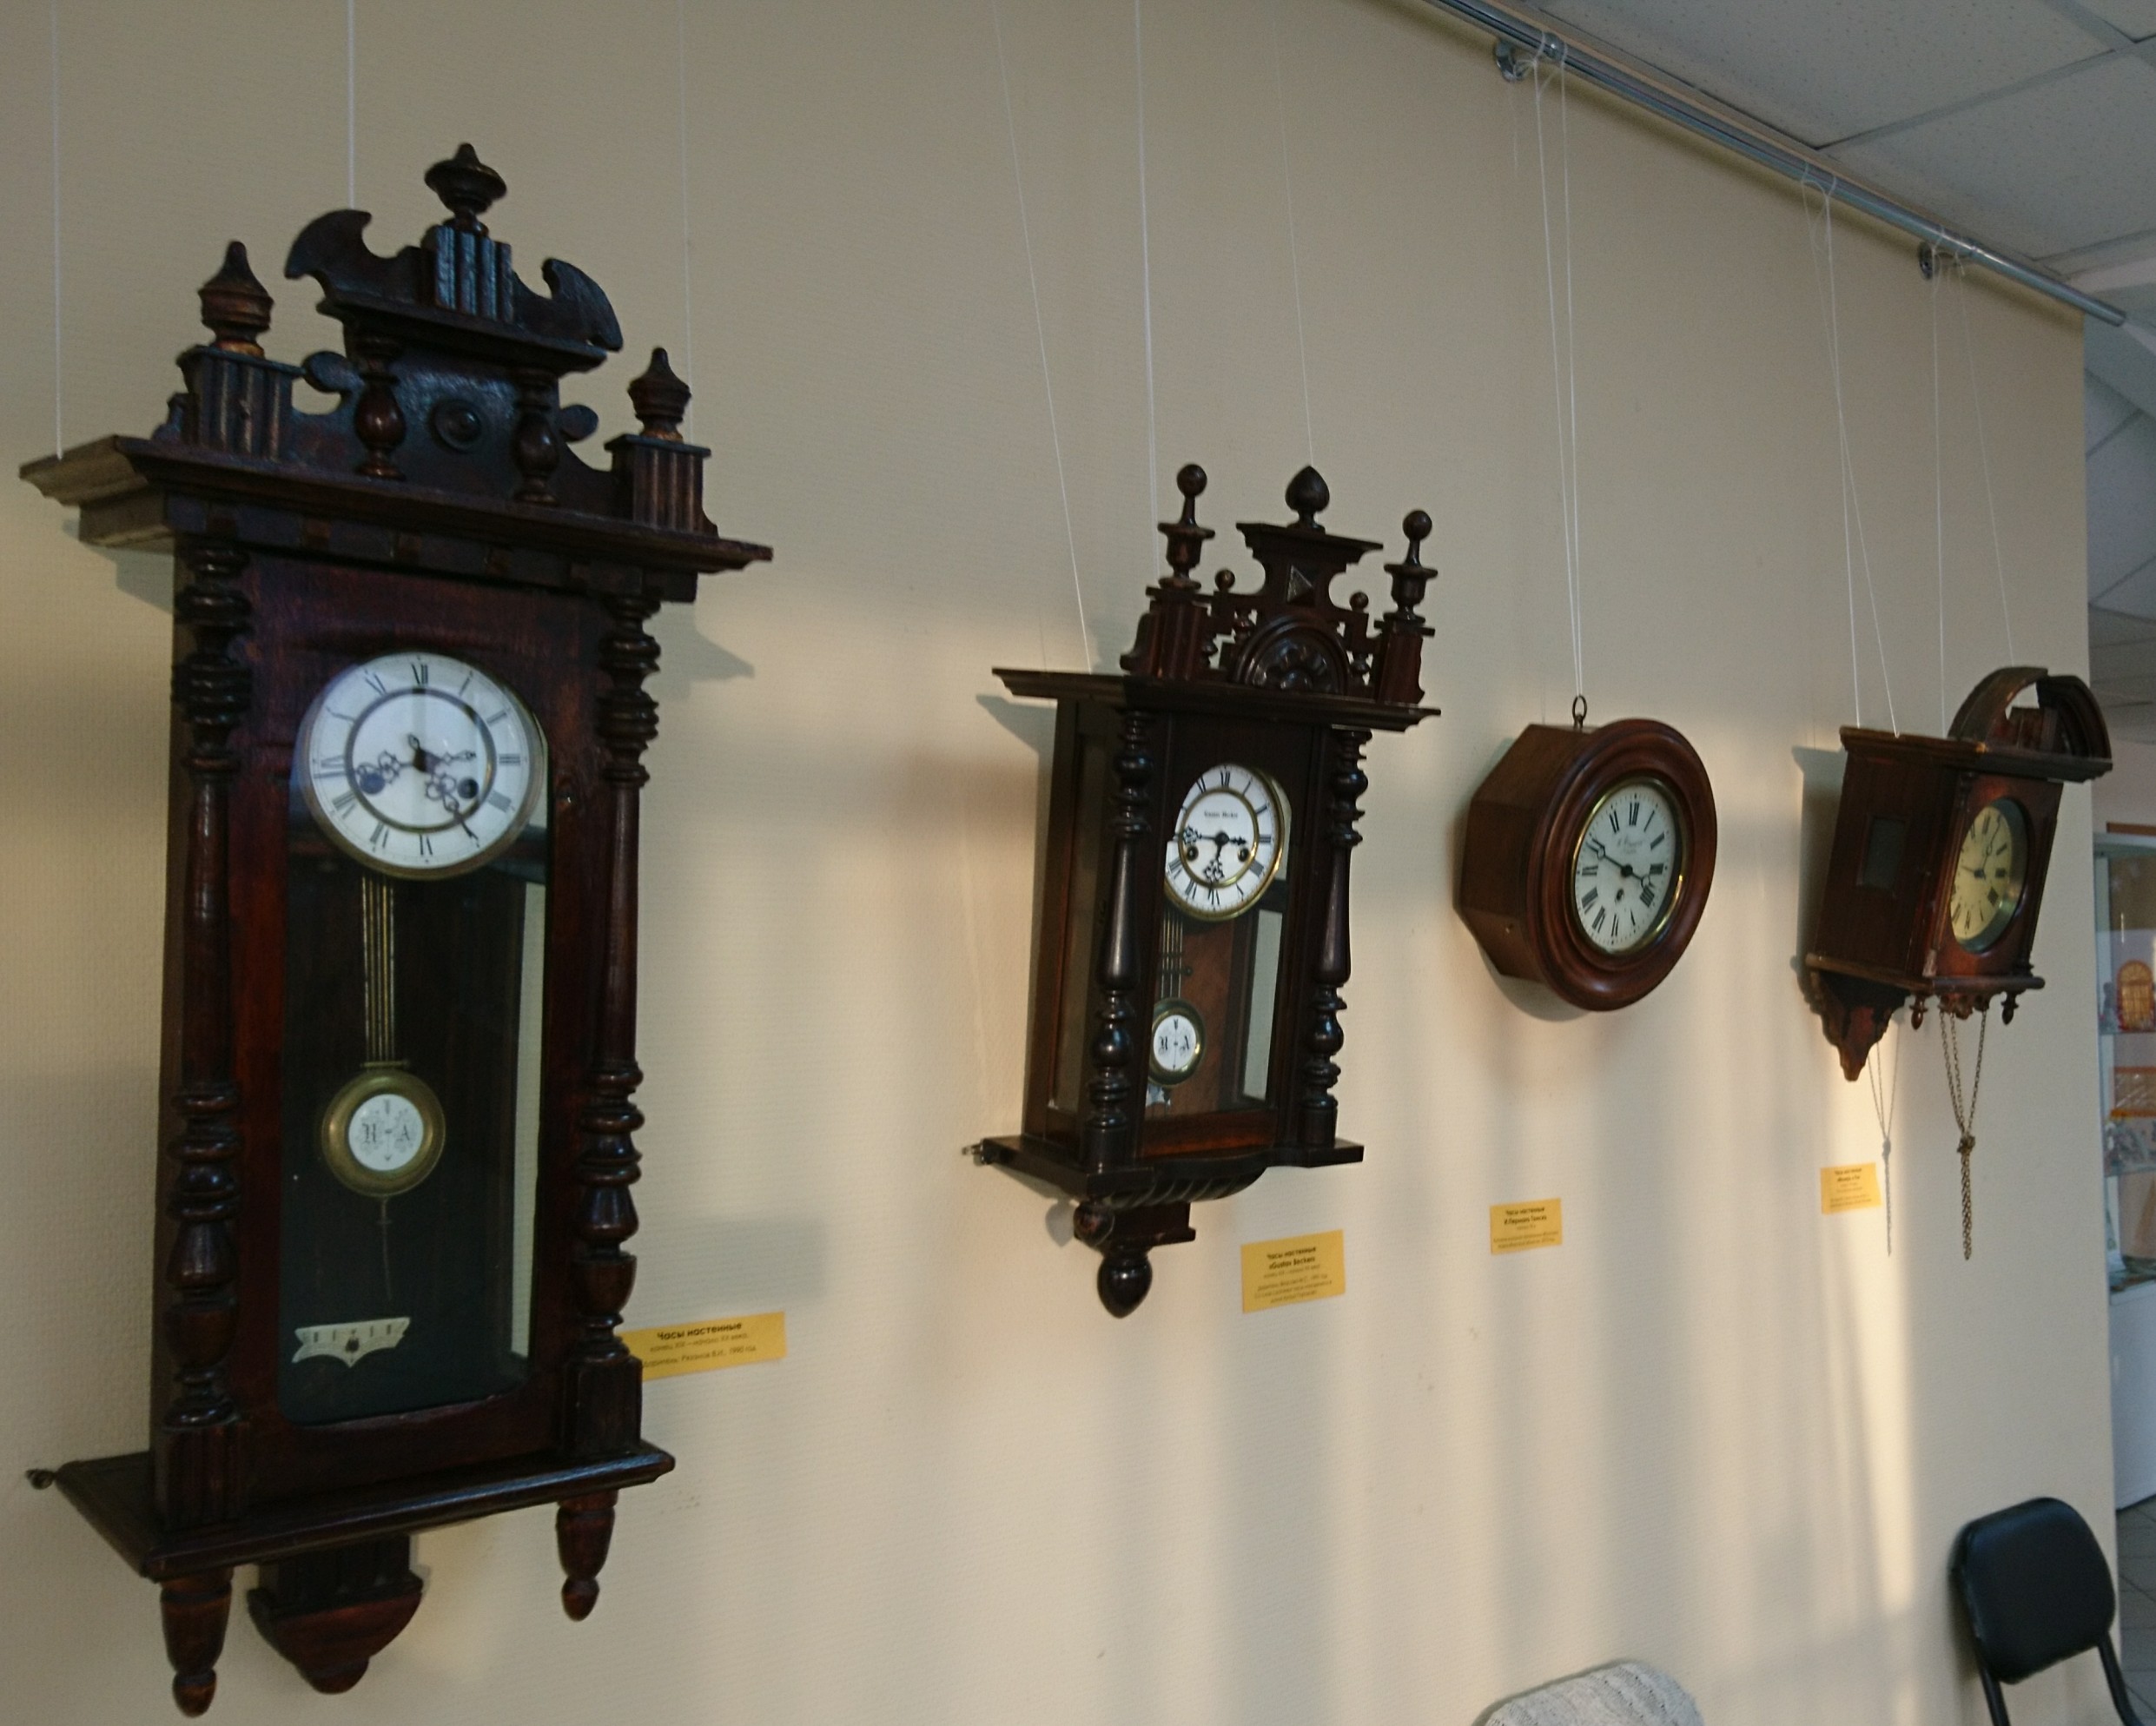 Выставка "Большой фестиваль часов" представляет более 200 часов из фондов музея и личных фондов бердчан - до 09 февраля в арт-зале музея, ул.Спортивная,11